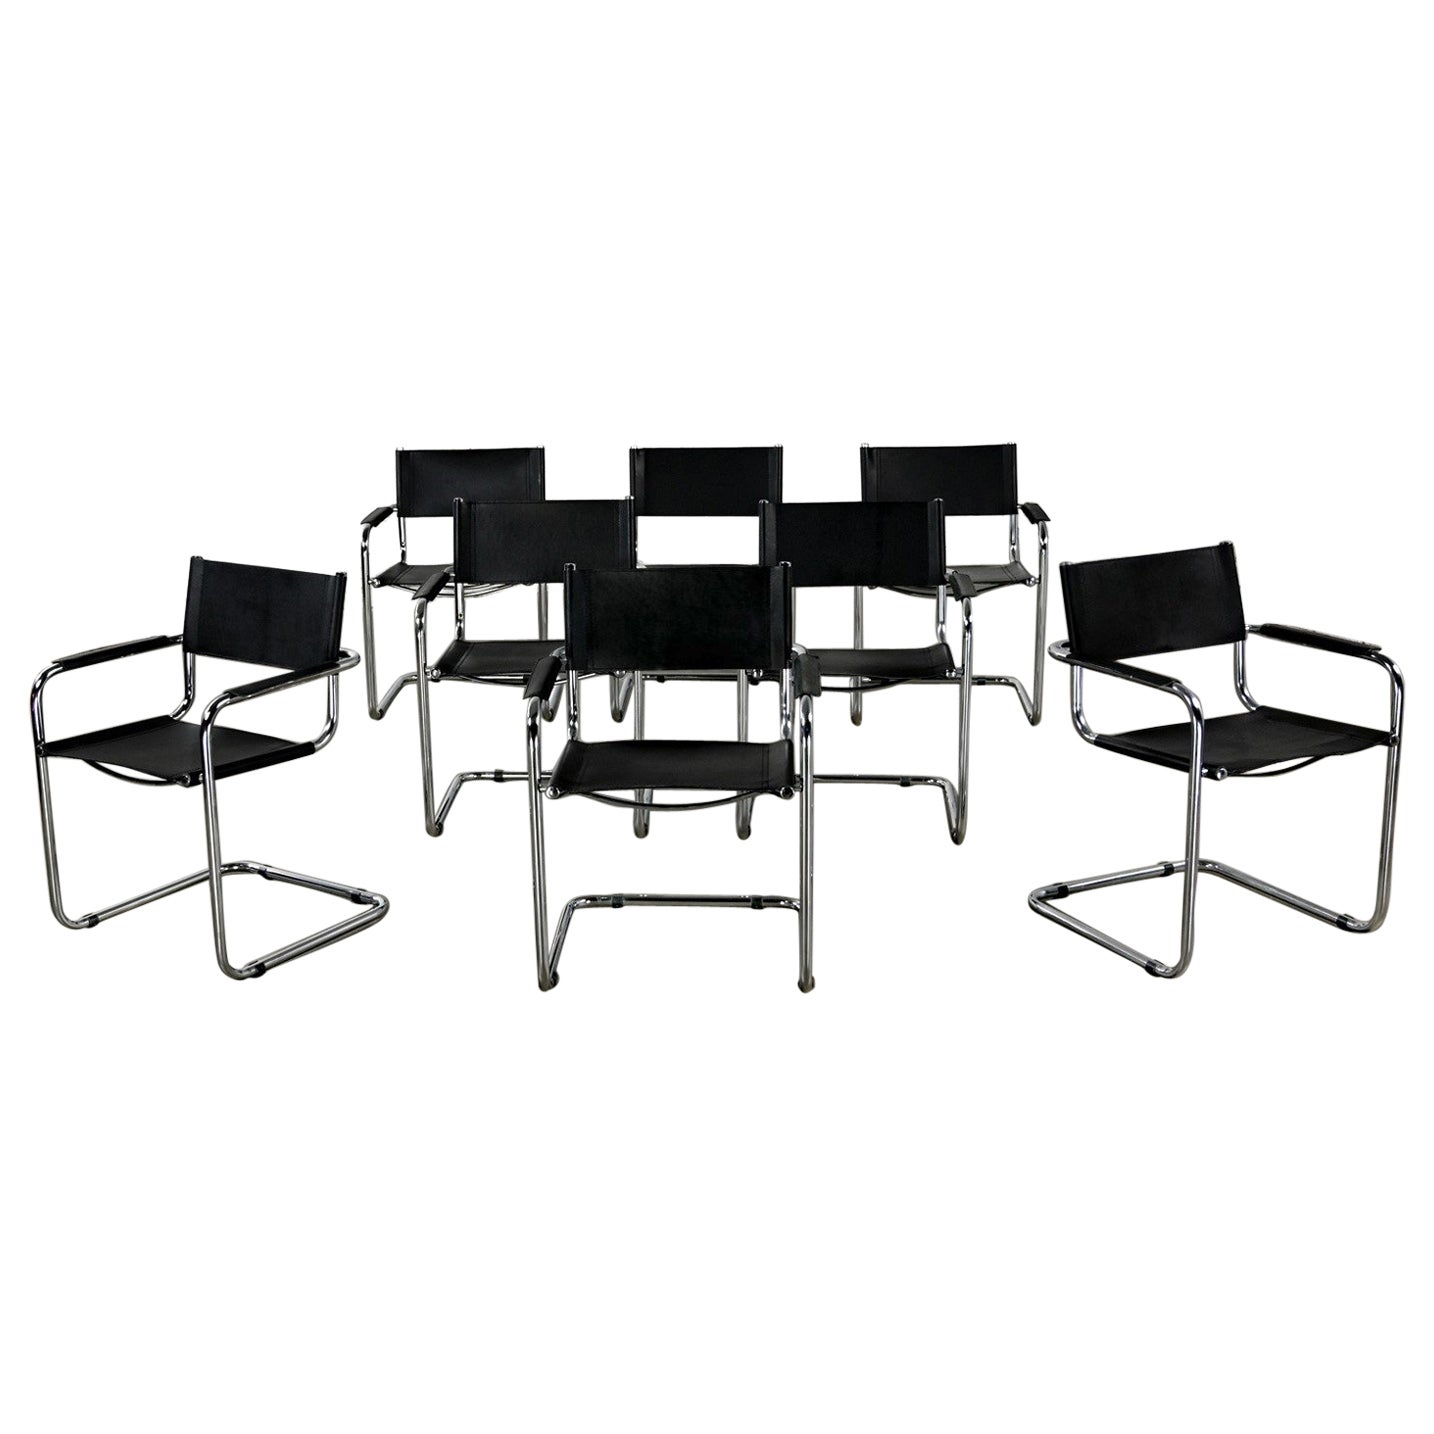 8 freitragende italienische Stühle aus schwarzem Leder und Chrom im Bauhaus-Stil, Mart Stam zugeschrieben